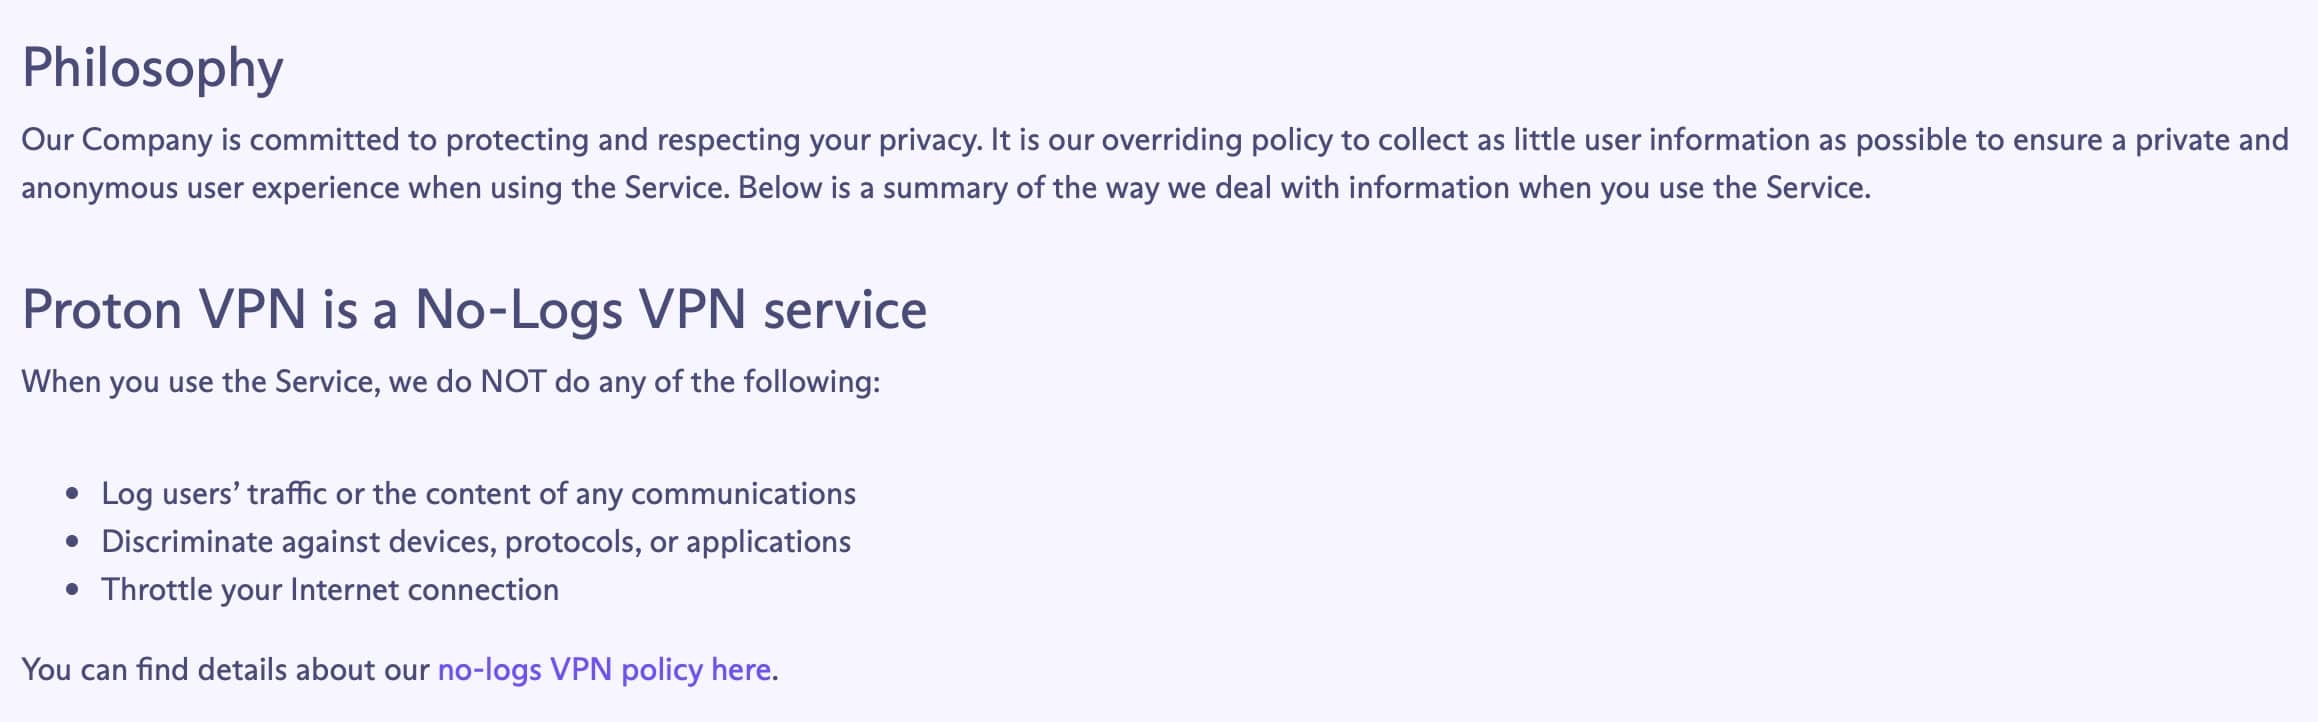 ProtonVPN - Privacy Policy